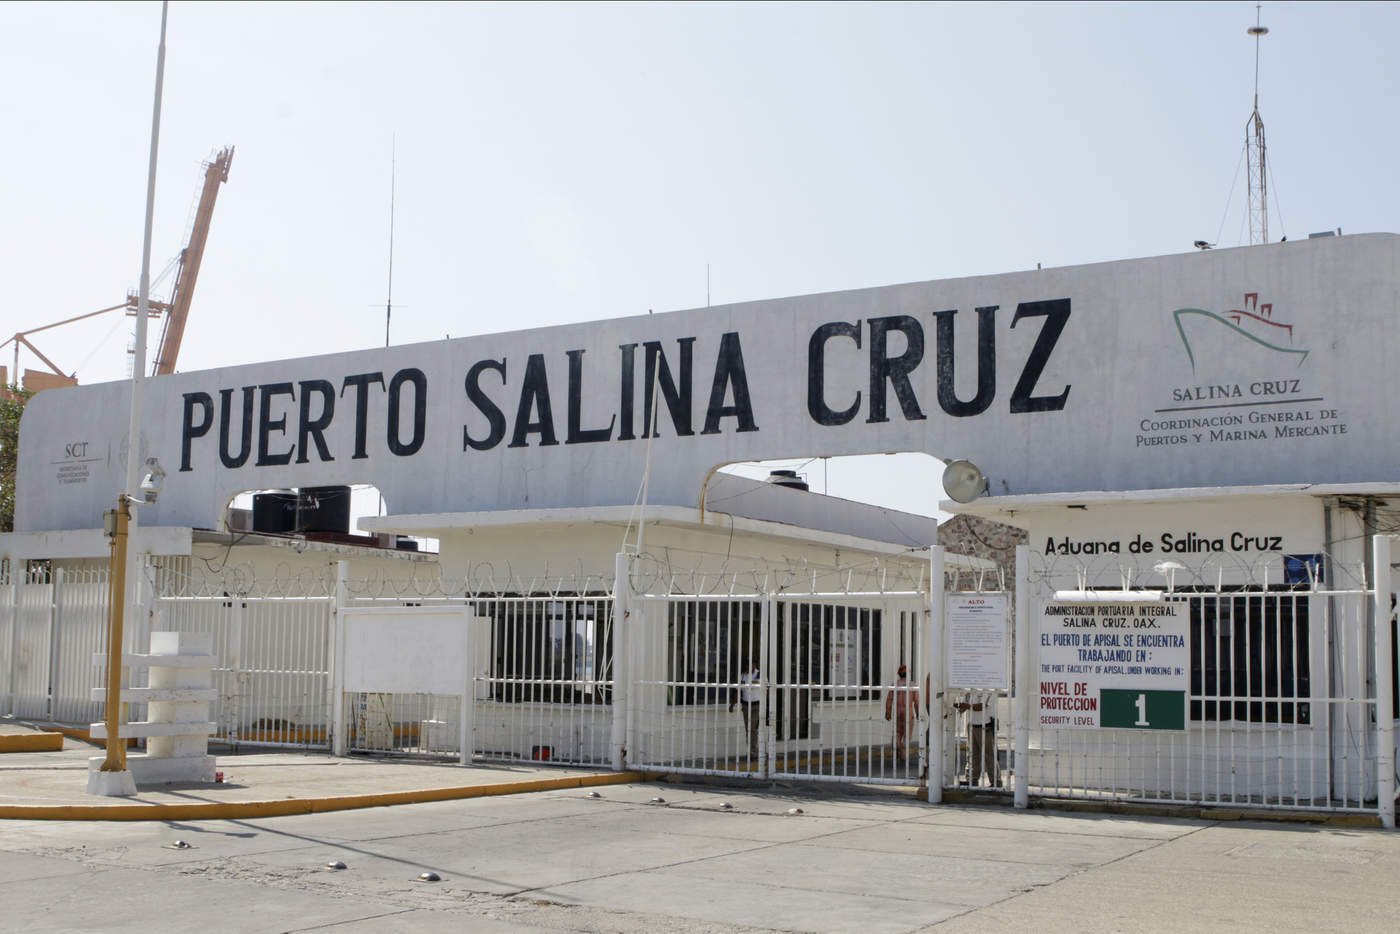 En Salina Cruz, sede de una refinería de Petróleos Mexicanos (Pemex), usuarios reportaron escasez de gasolinas y filas en las estaciones de servicio, mientras que en Bahías de Huatulco se informó la suspensión de algunos servicios públicos por falta de combustible. (ARCHIVO)